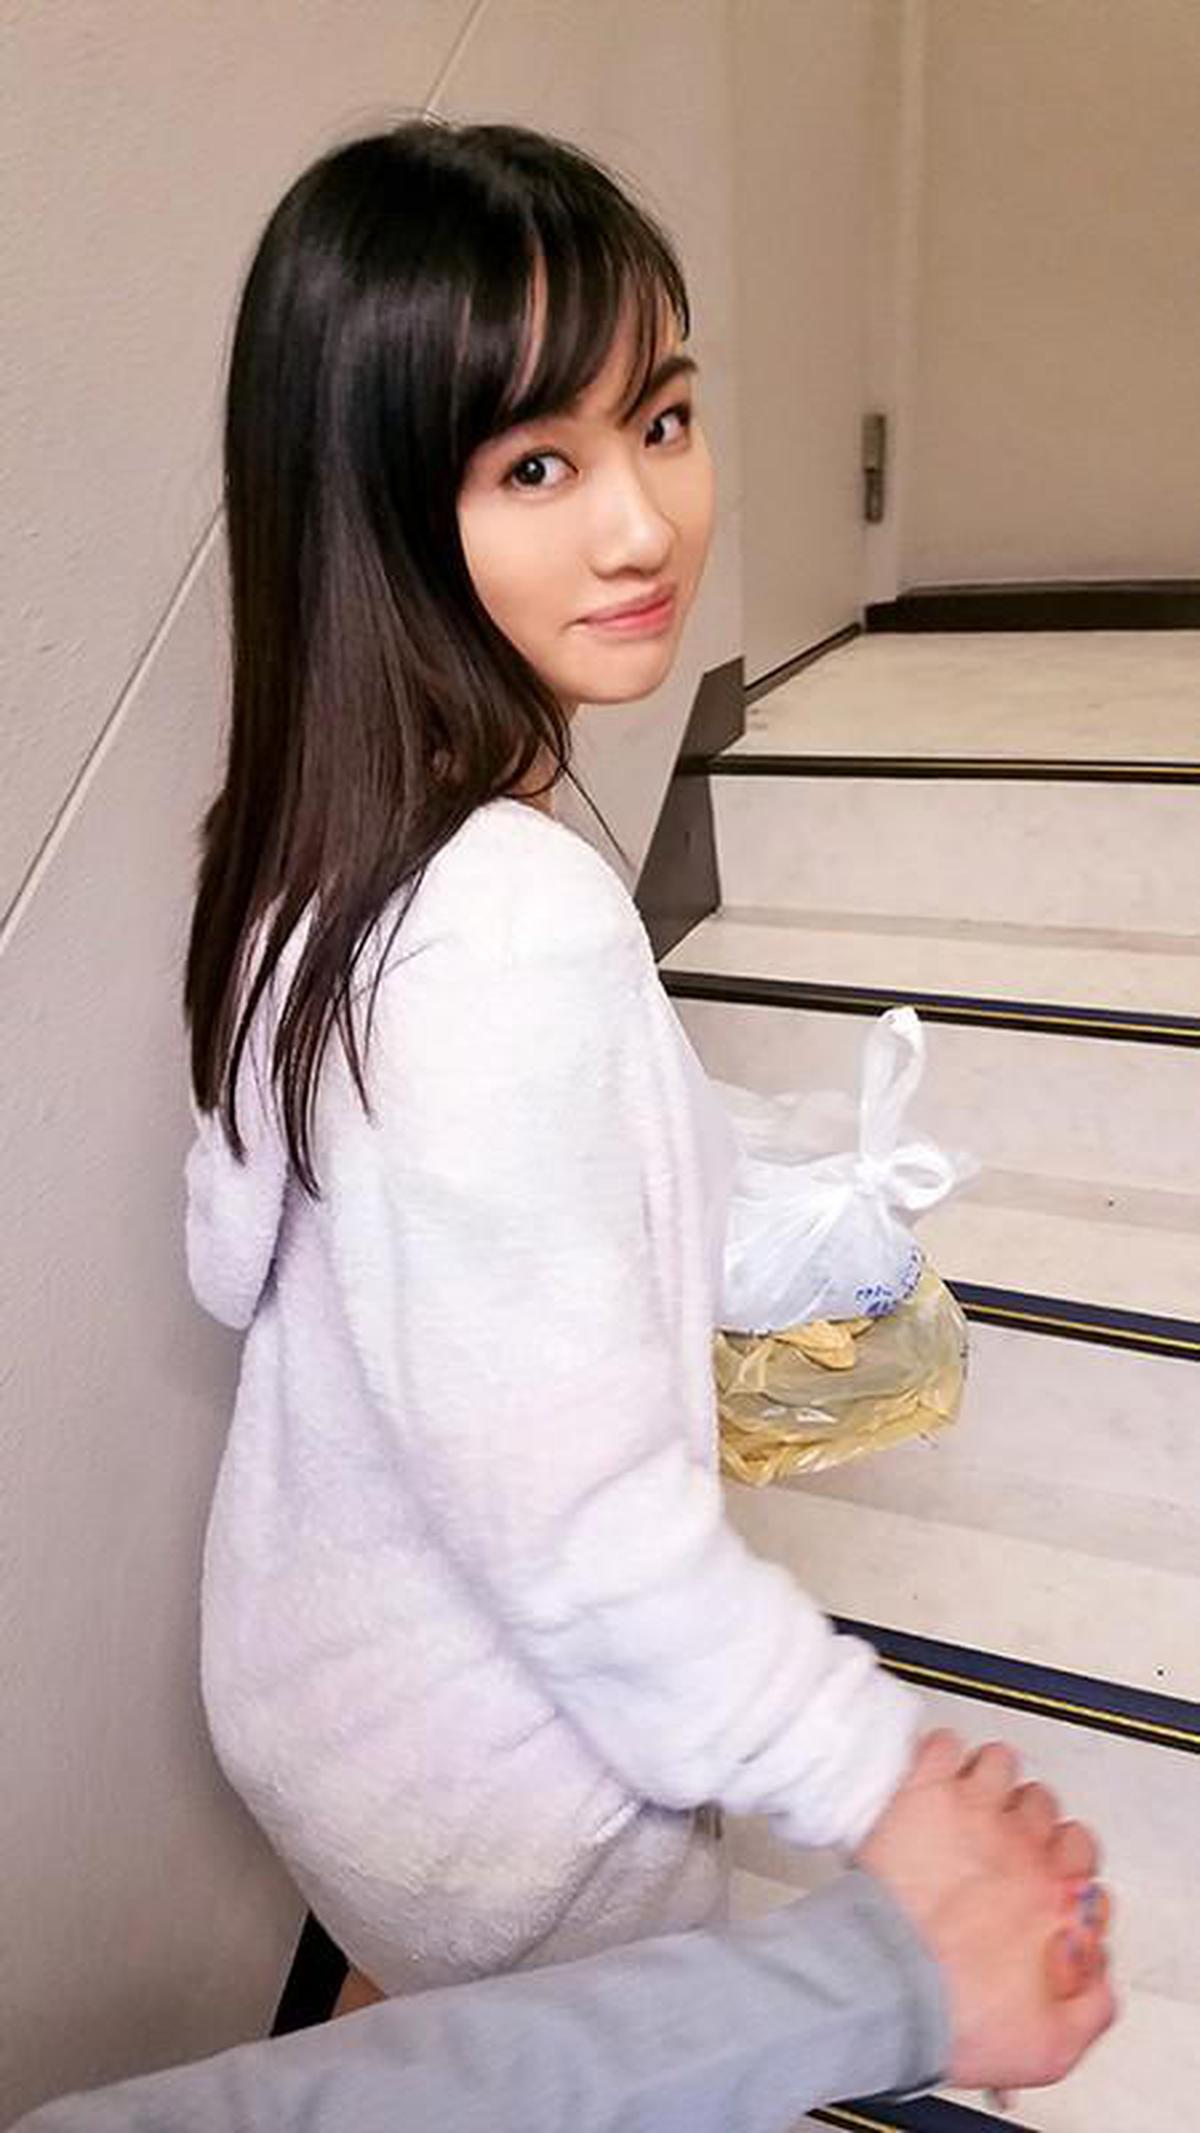 (VR) KIWVR-163 Woo-Makan! !! Seorang gadis cantik yang rapi dan bersih di tempat tujuan menunjukkan chiller bulu hari hujan dan merupakan godaan yang kaya! !! [Lucky cabul] VR! !! Urara Kanon